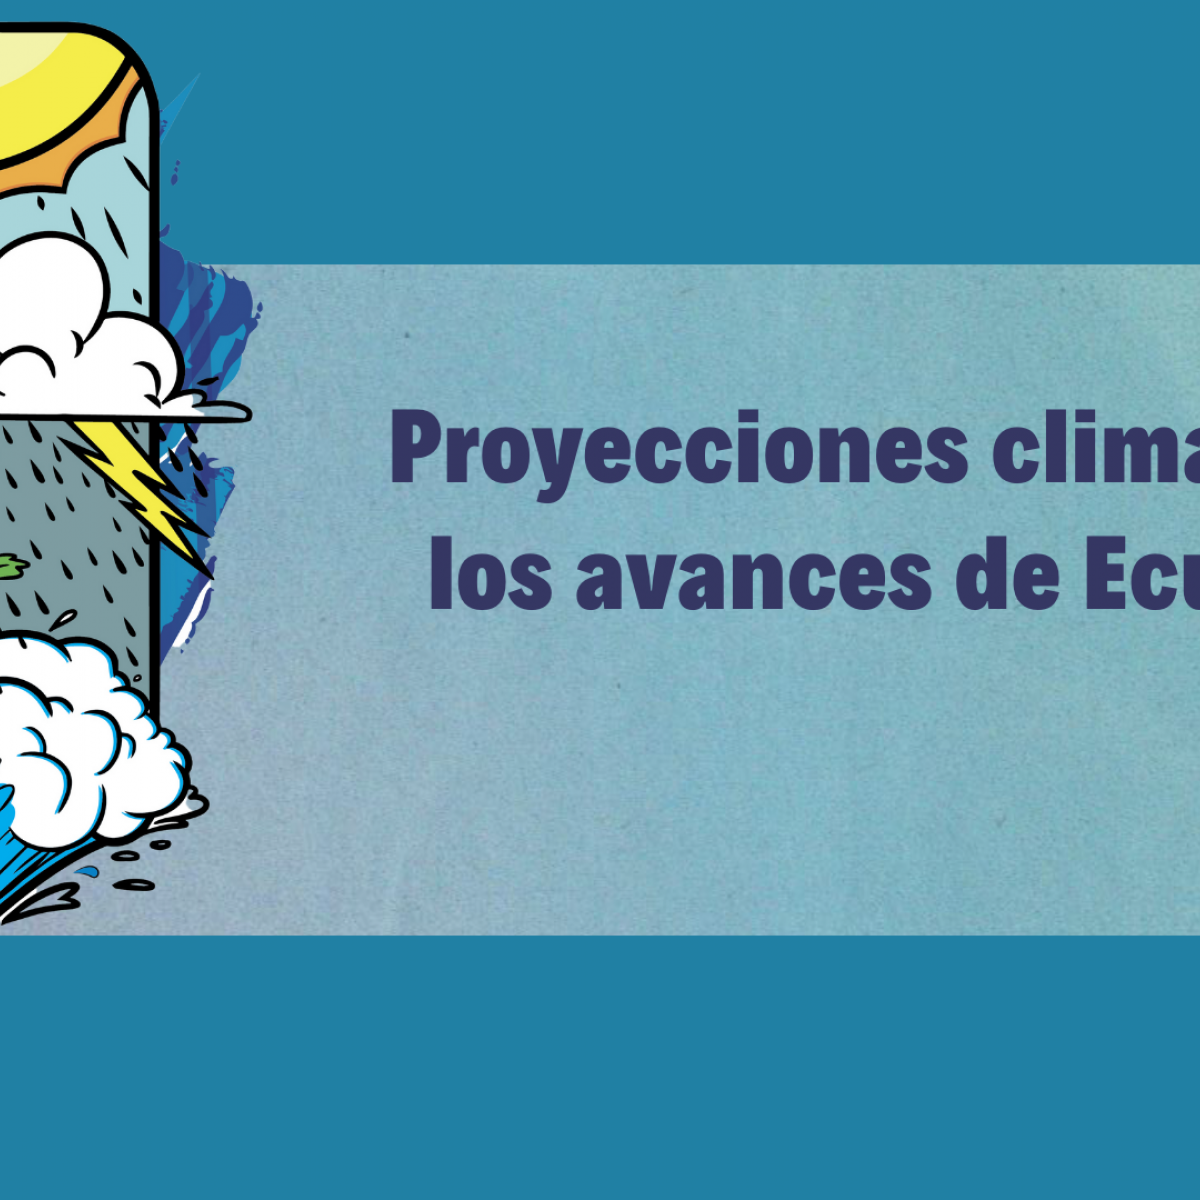 Proyecciones climáticas, los avances de Ecuador